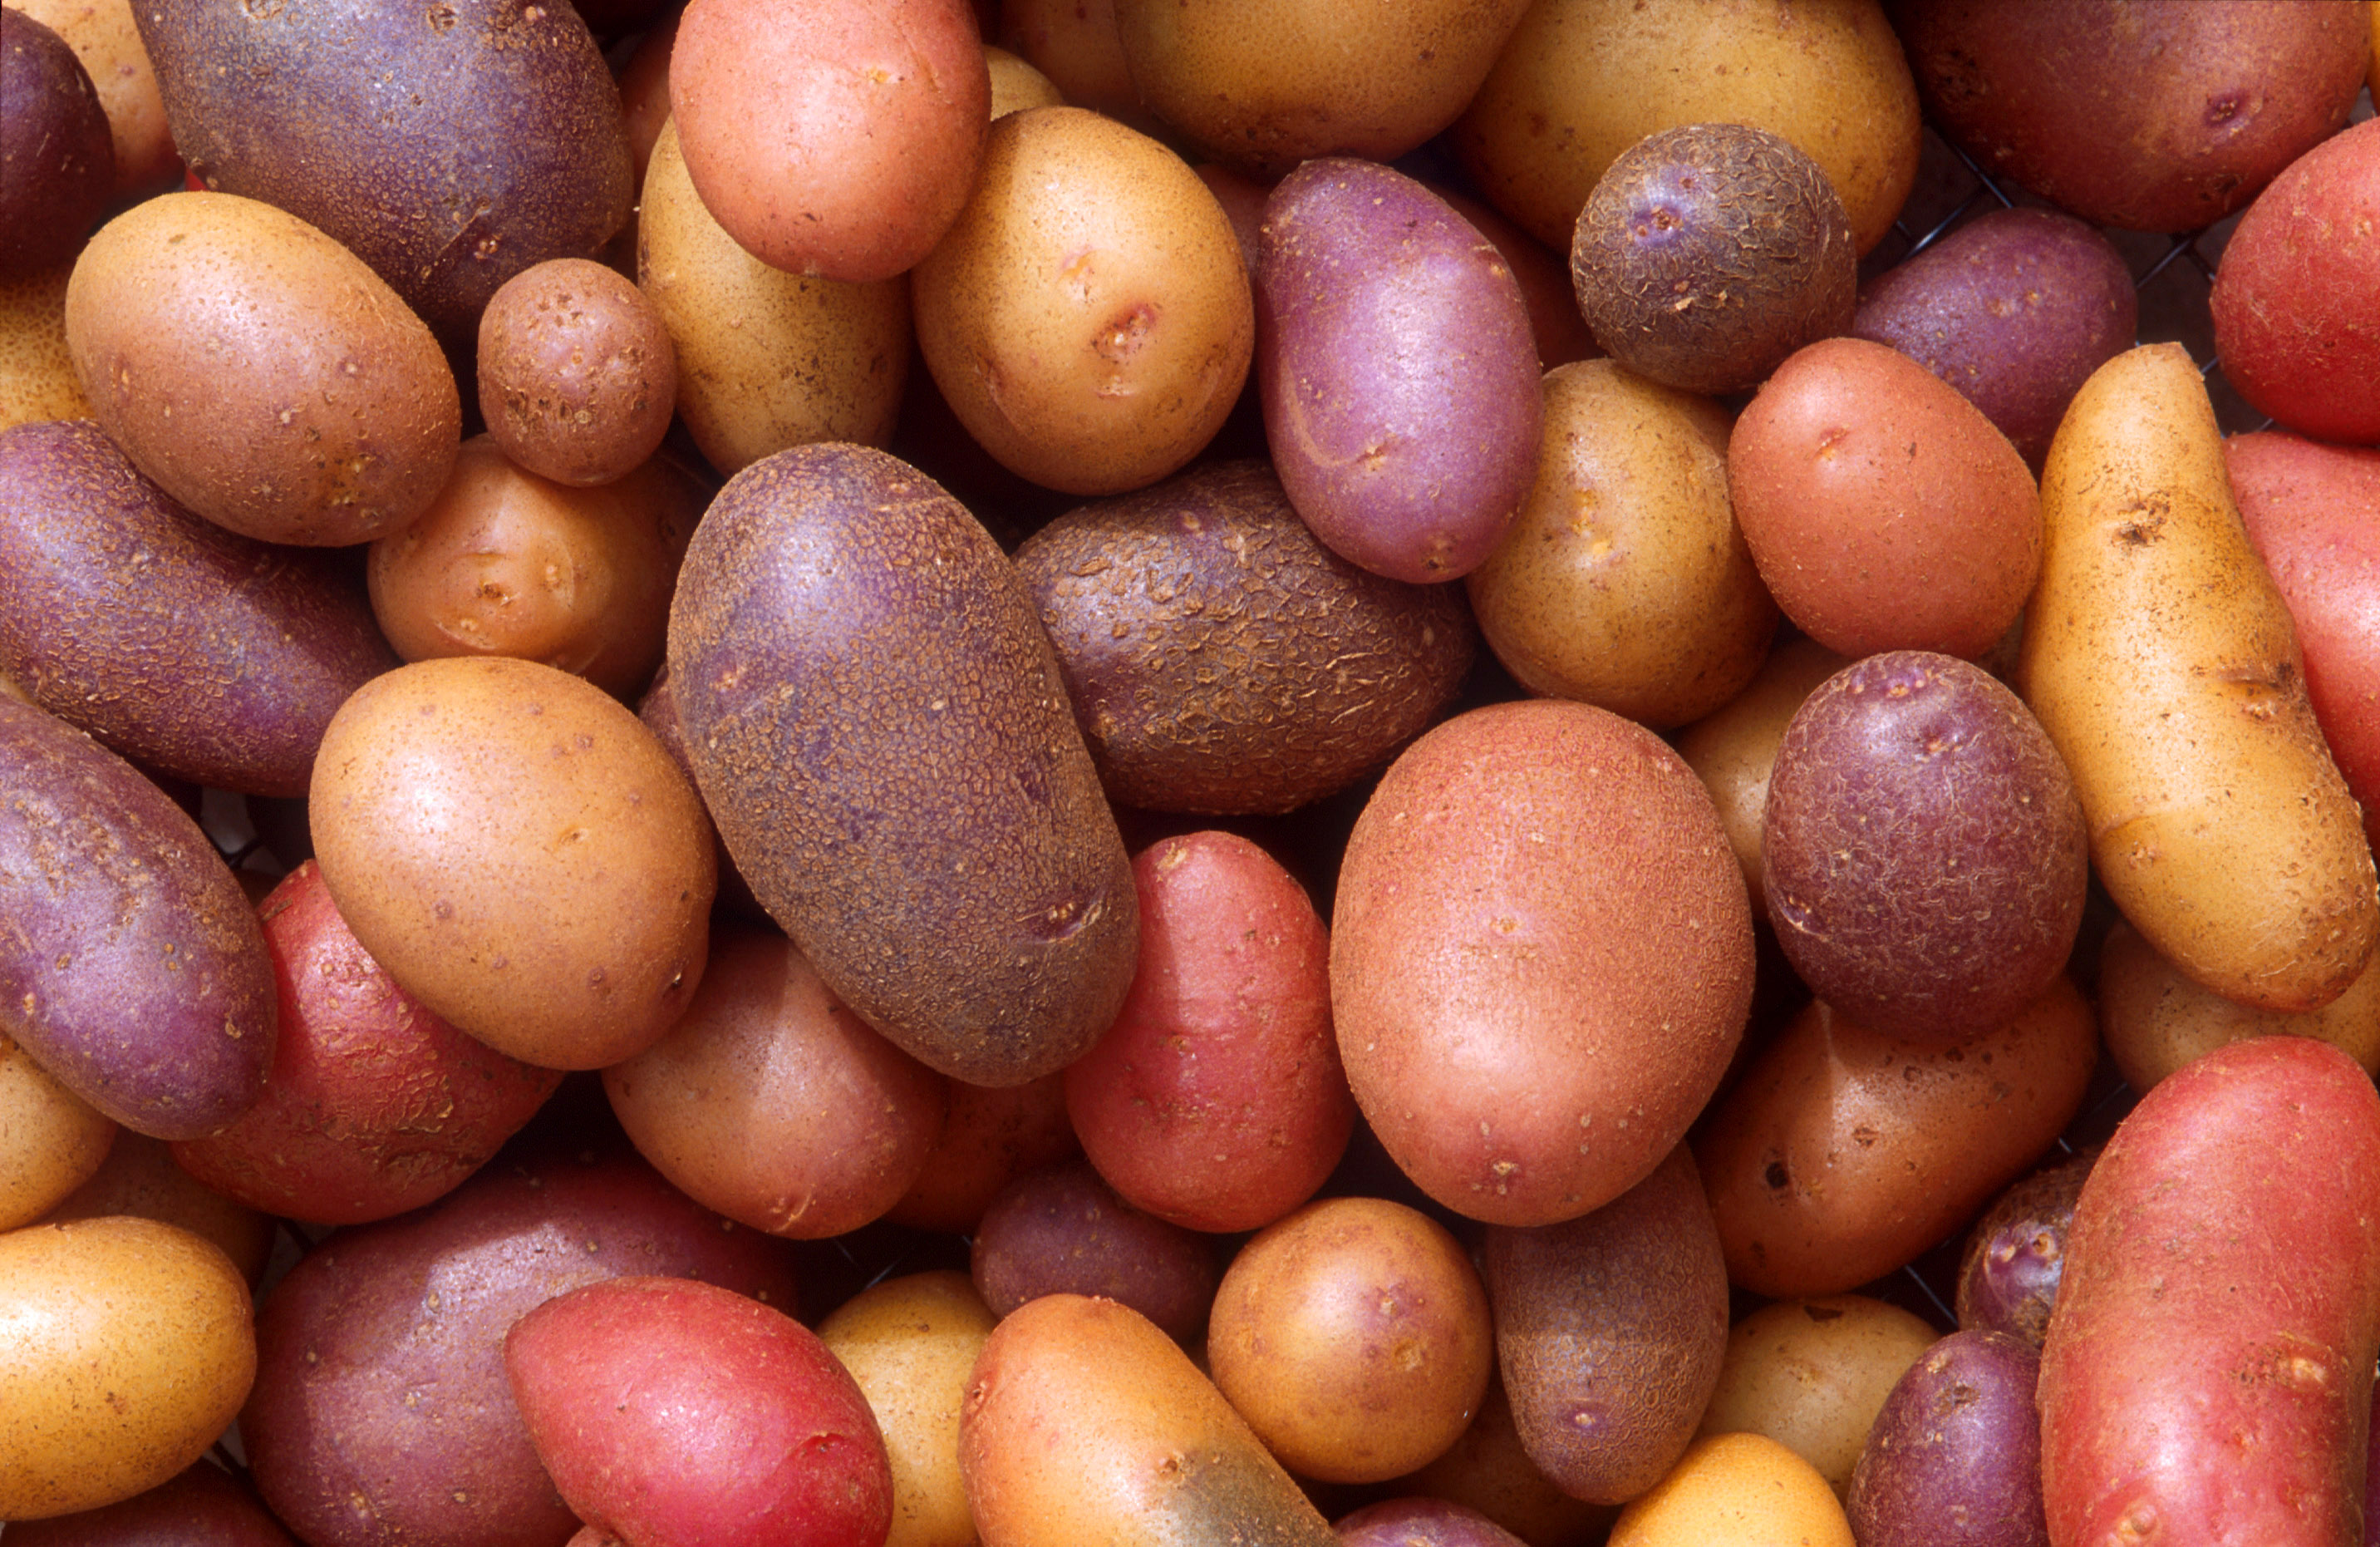 Replacing Potatoes - Low Carb Alternatives